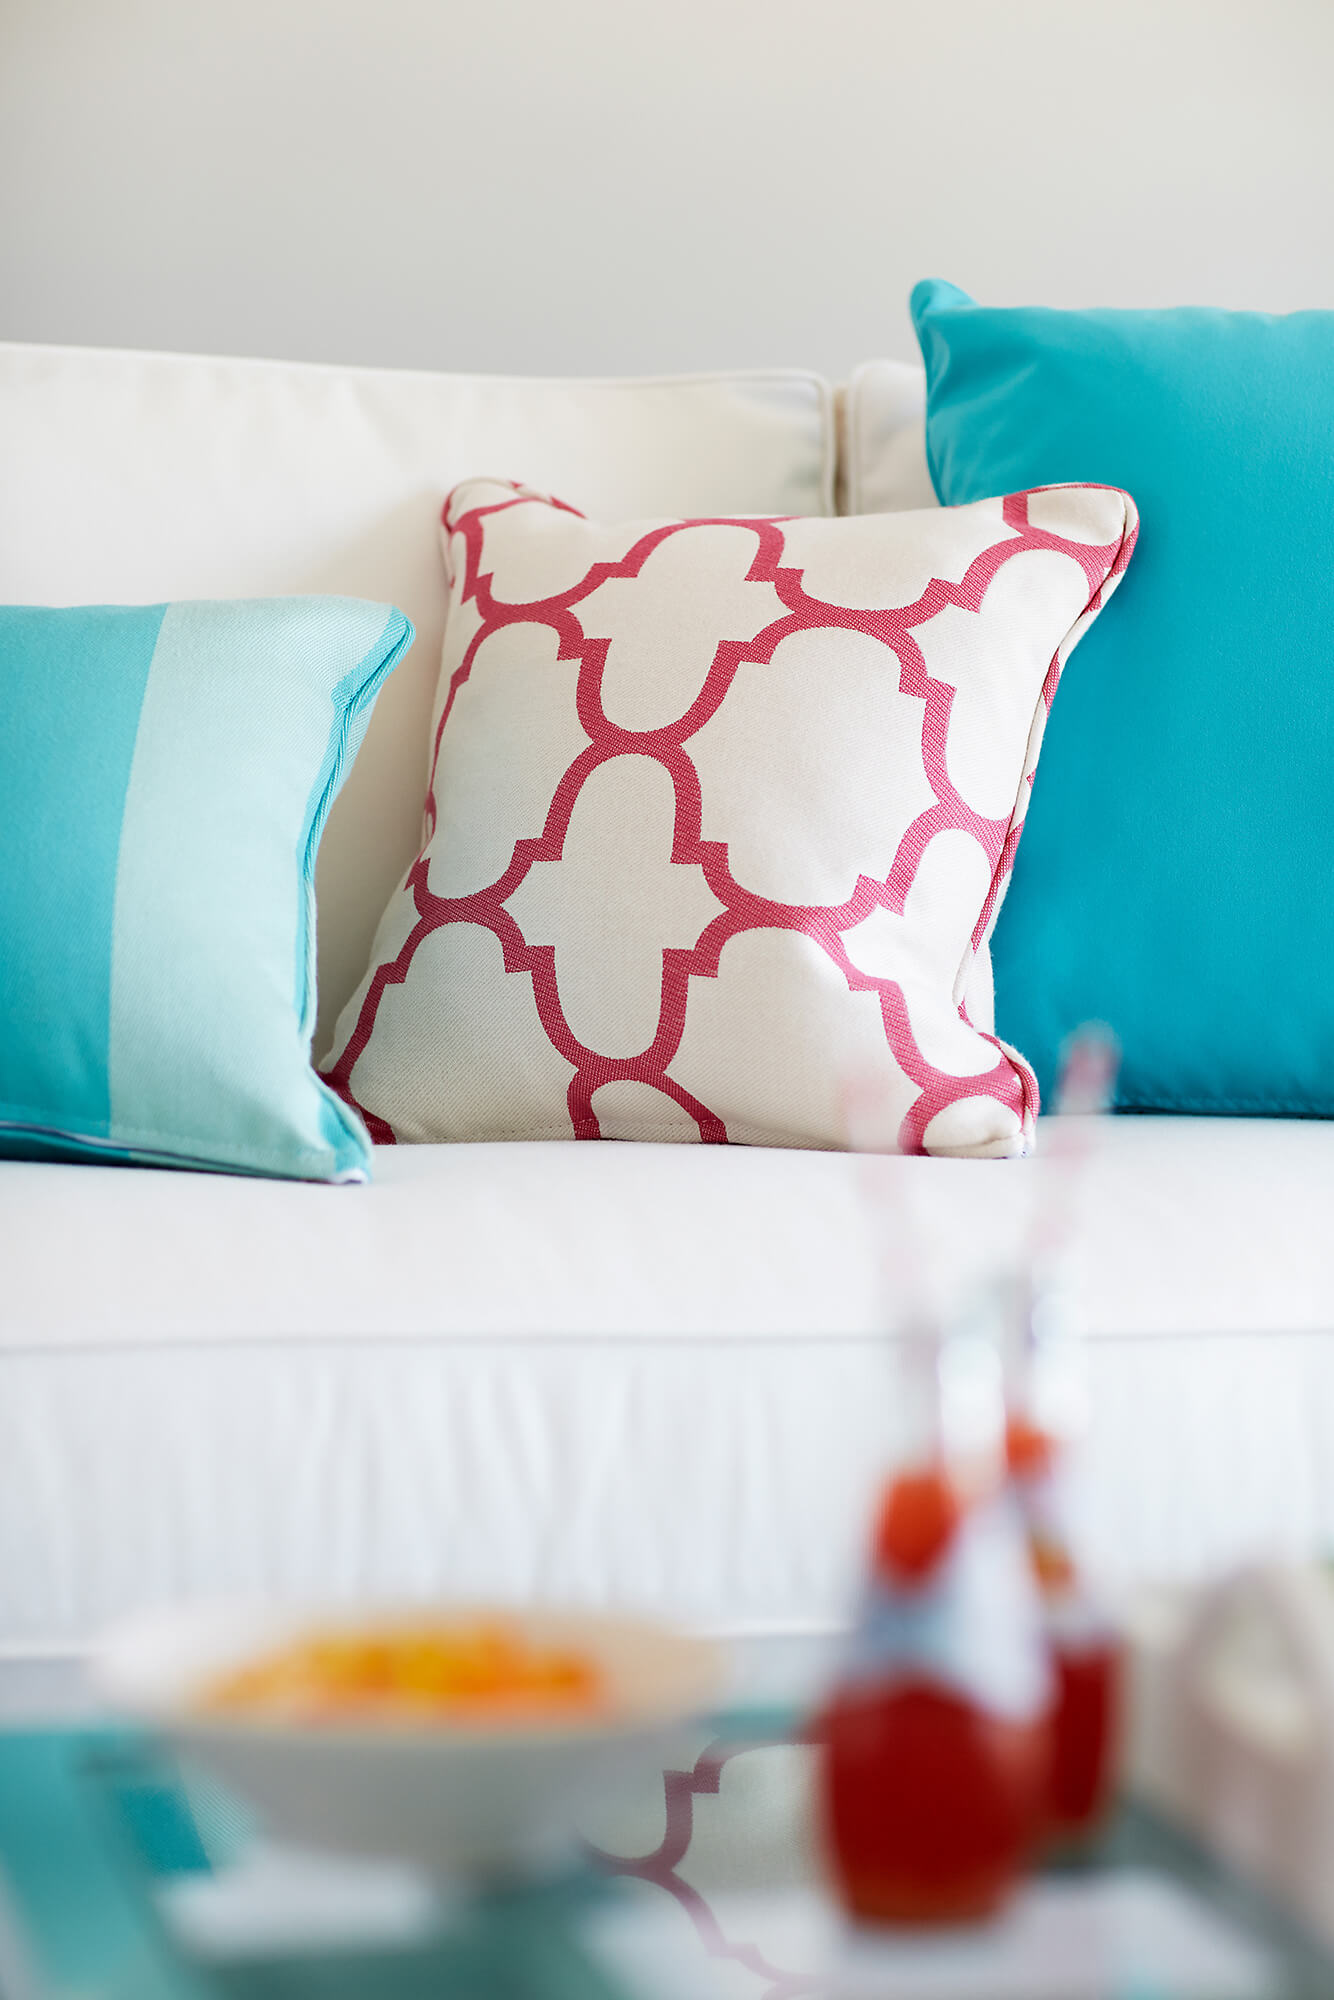 Een woonkamer met Sunbrella stofferingstextiel wordt gekenmerkt door texturen in neutrale tinten